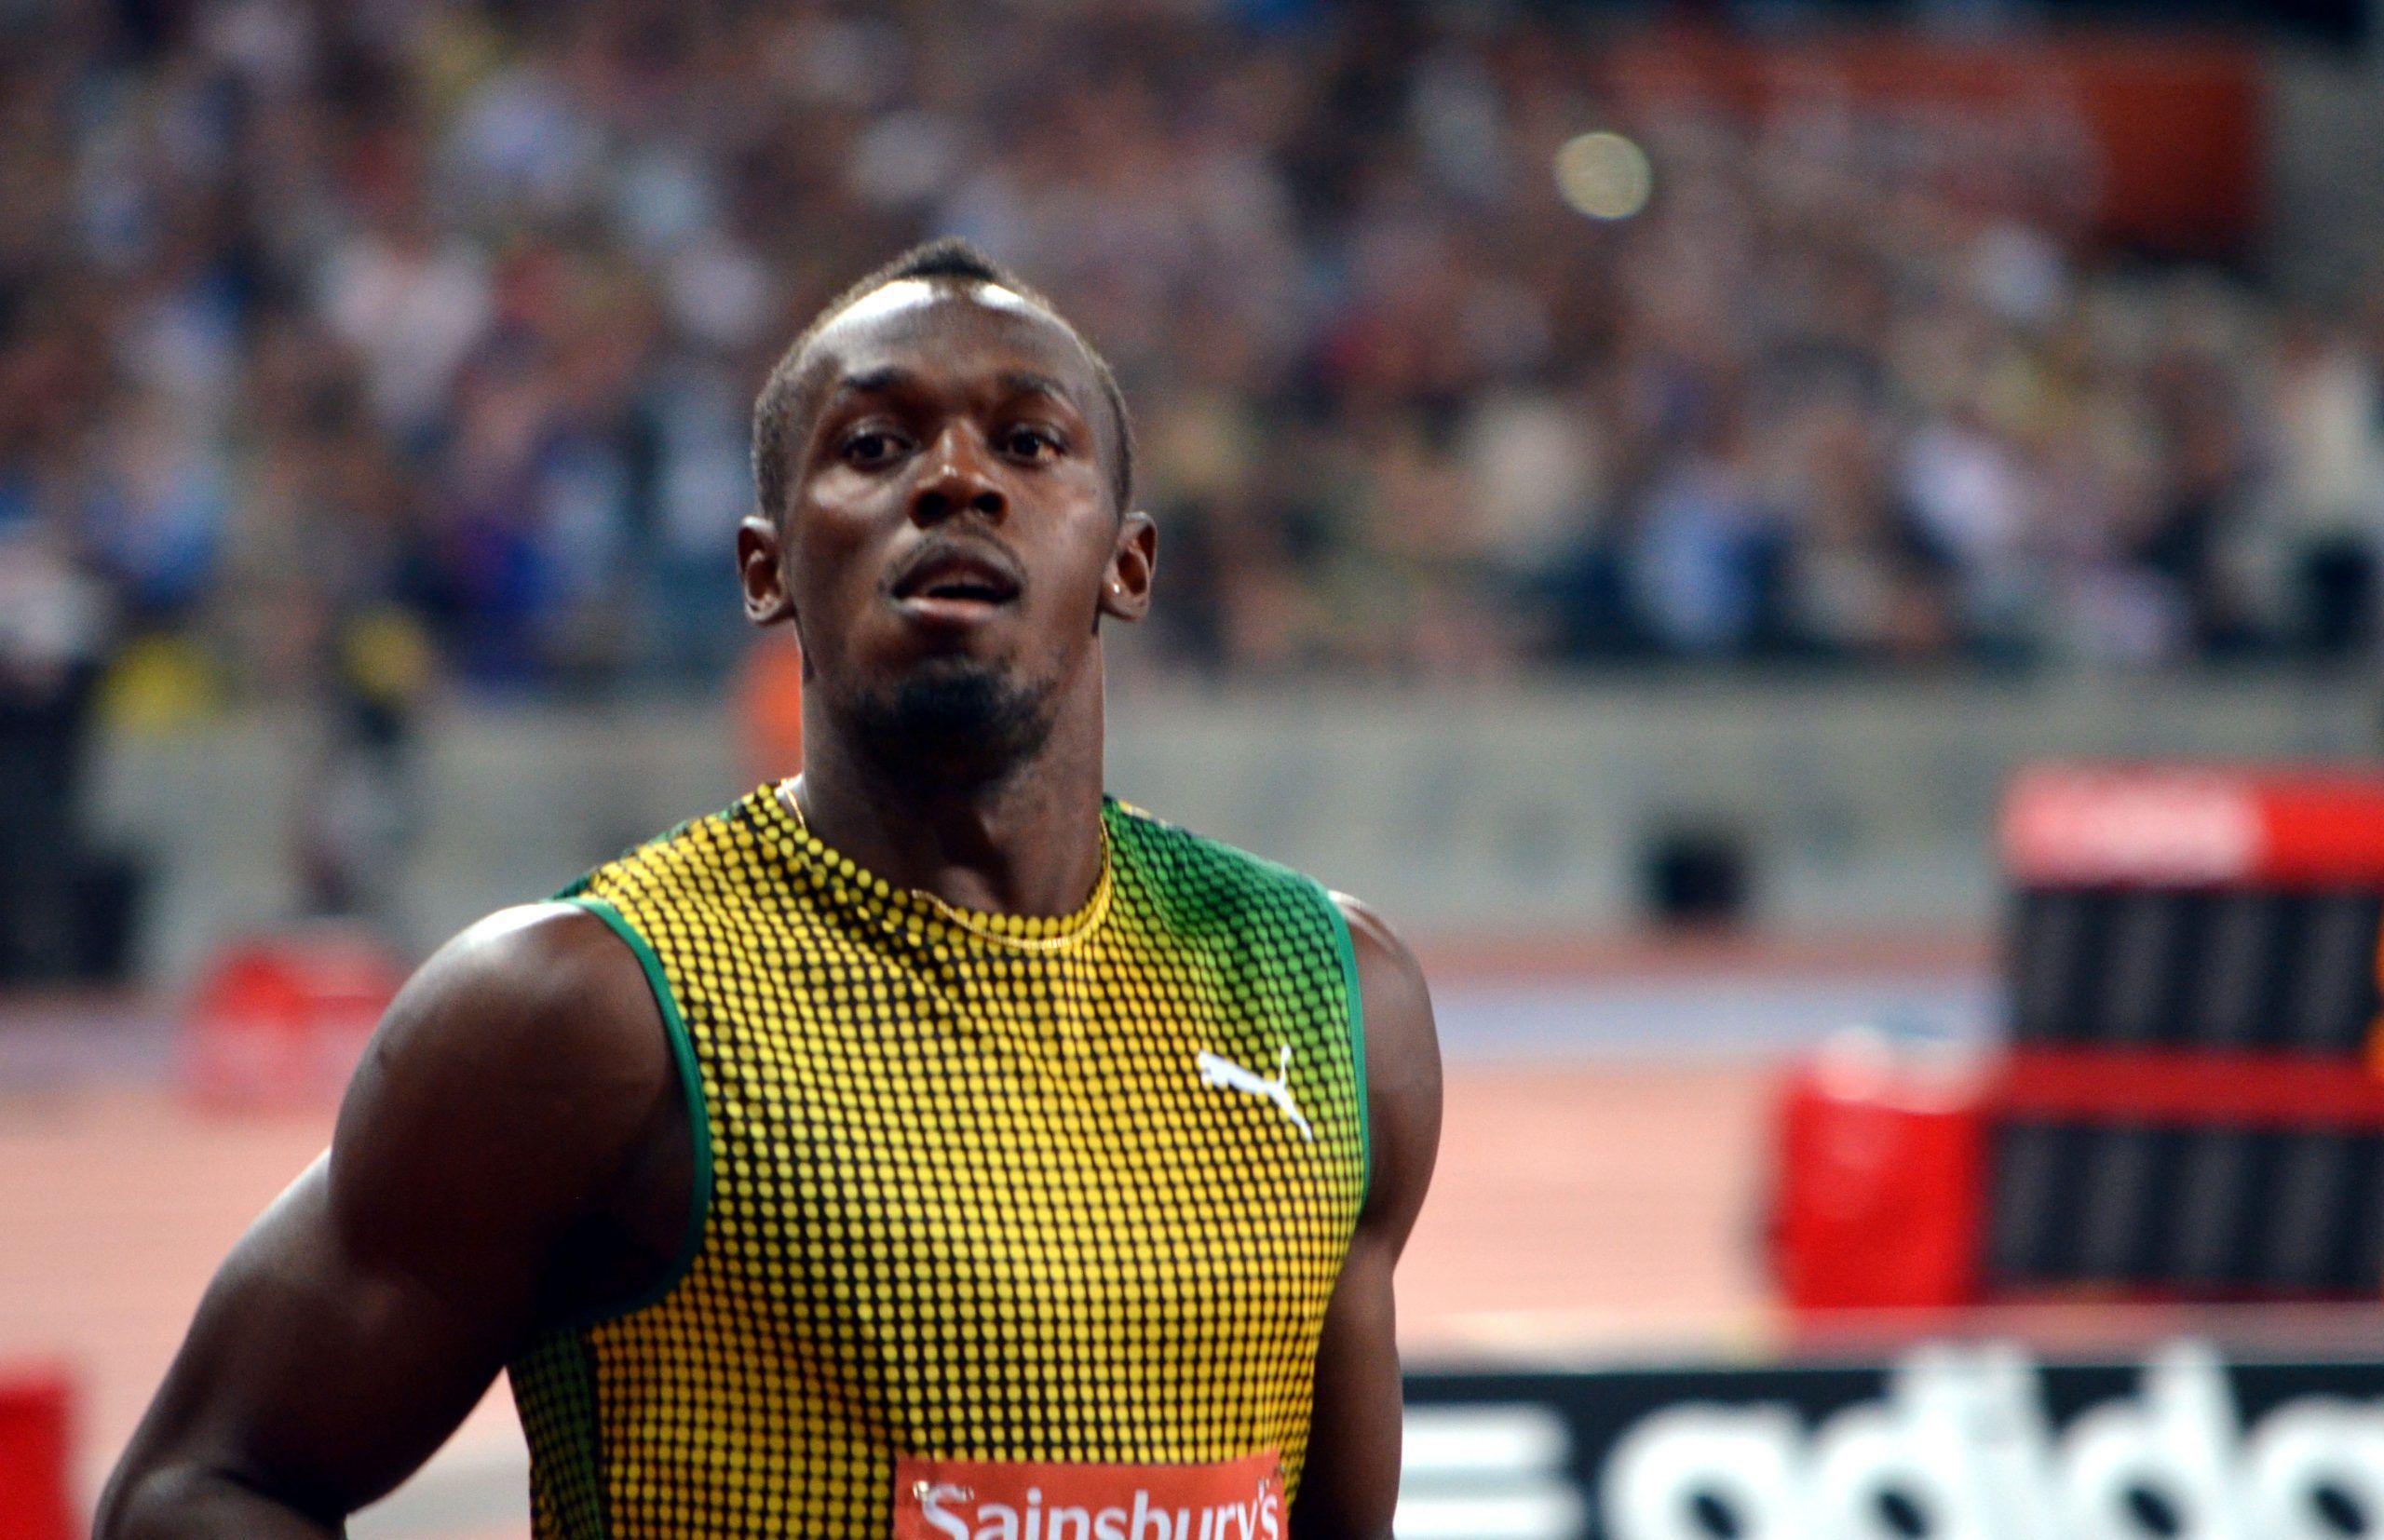 Olimpiadi 2016 atletica leggera, date e calendario gare: Bolt ancora favorito?